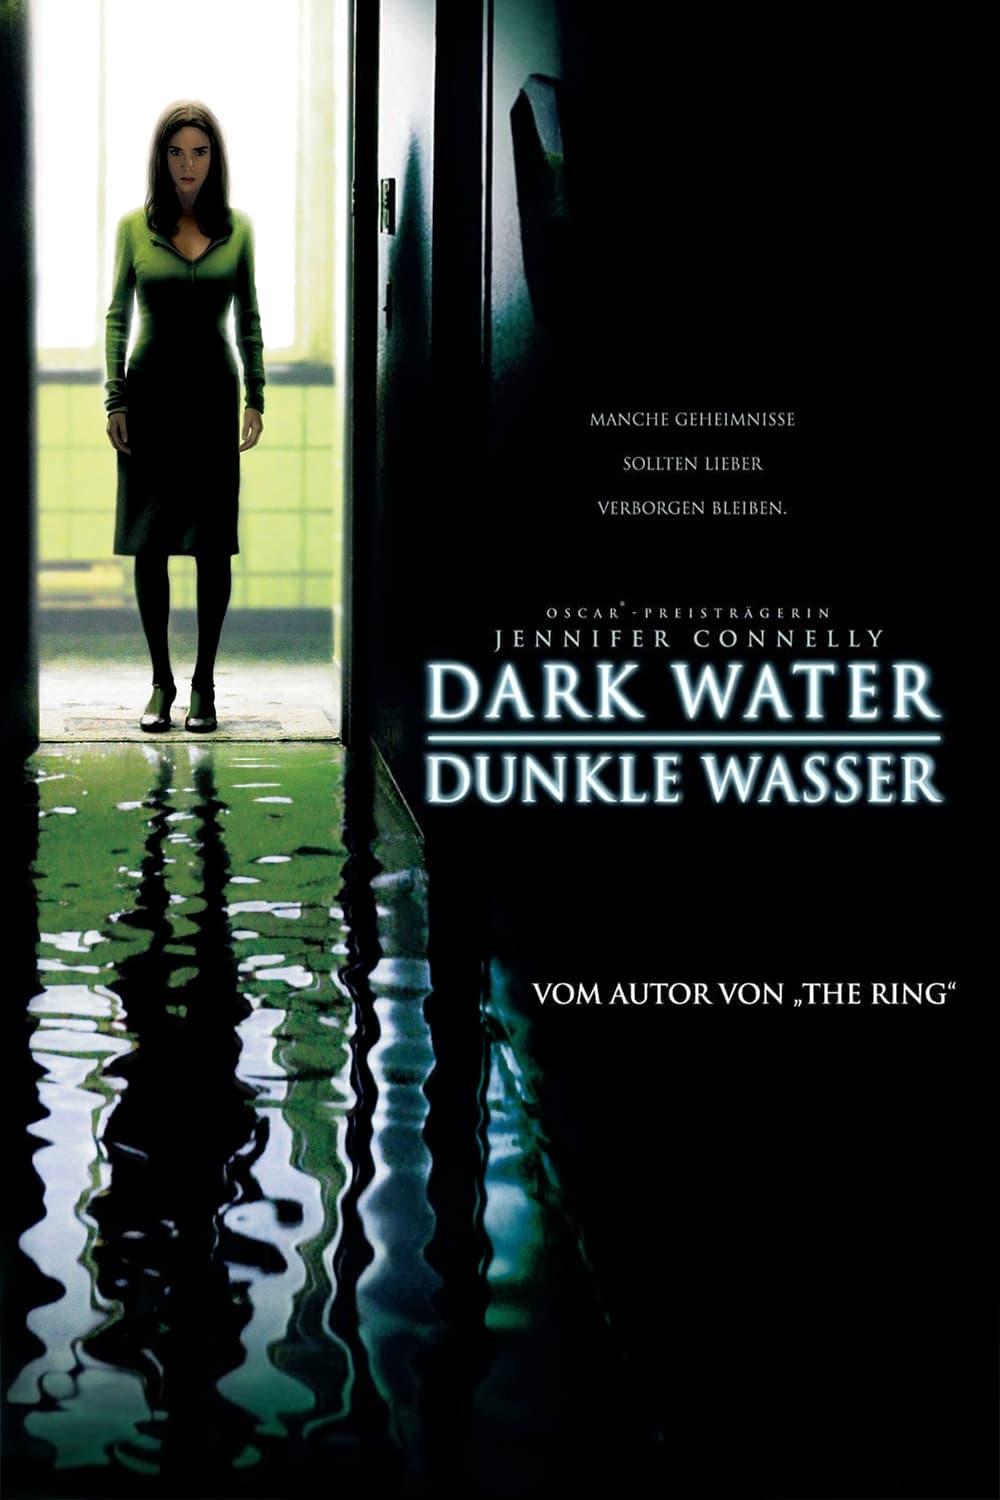 Dark Water - Dunkle Wasser poster